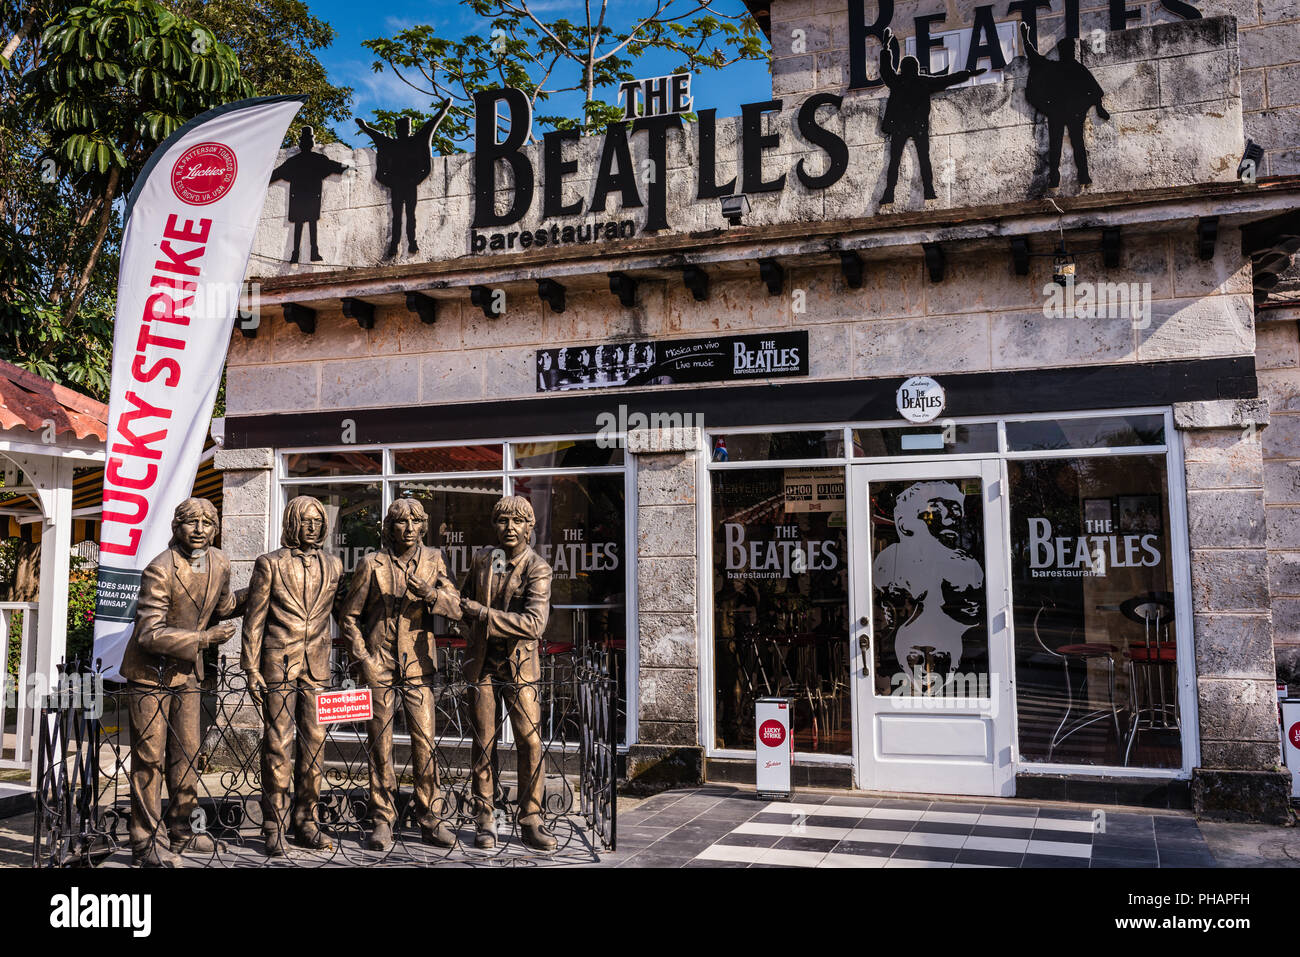 Varadero, Cuba / 17 mars 2016 : Les Beatles' Bar-Restaurant est un endroit populaire pour des concerts live rock à la plage de la ville. Banque D'Images